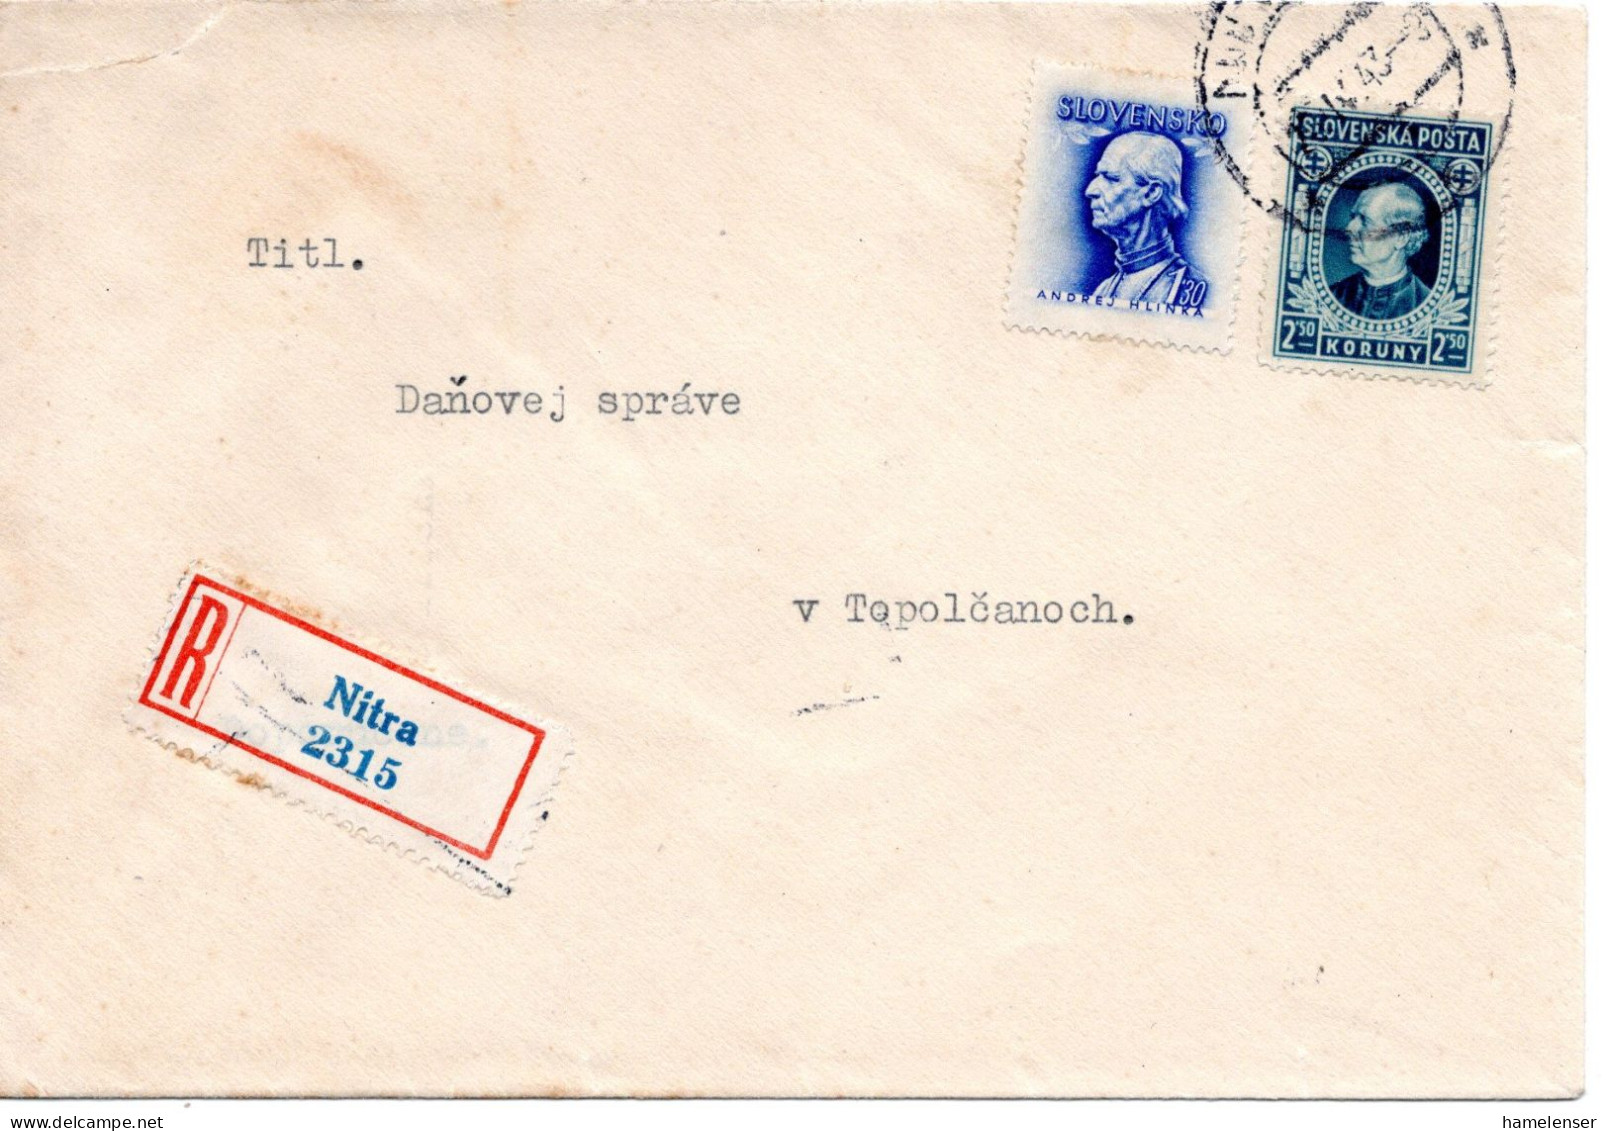 64688 - Slowakei - 1943 - 2,50Ks Hlinka MiF A R-Bf NITRA -> Topol'cany - Briefe U. Dokumente